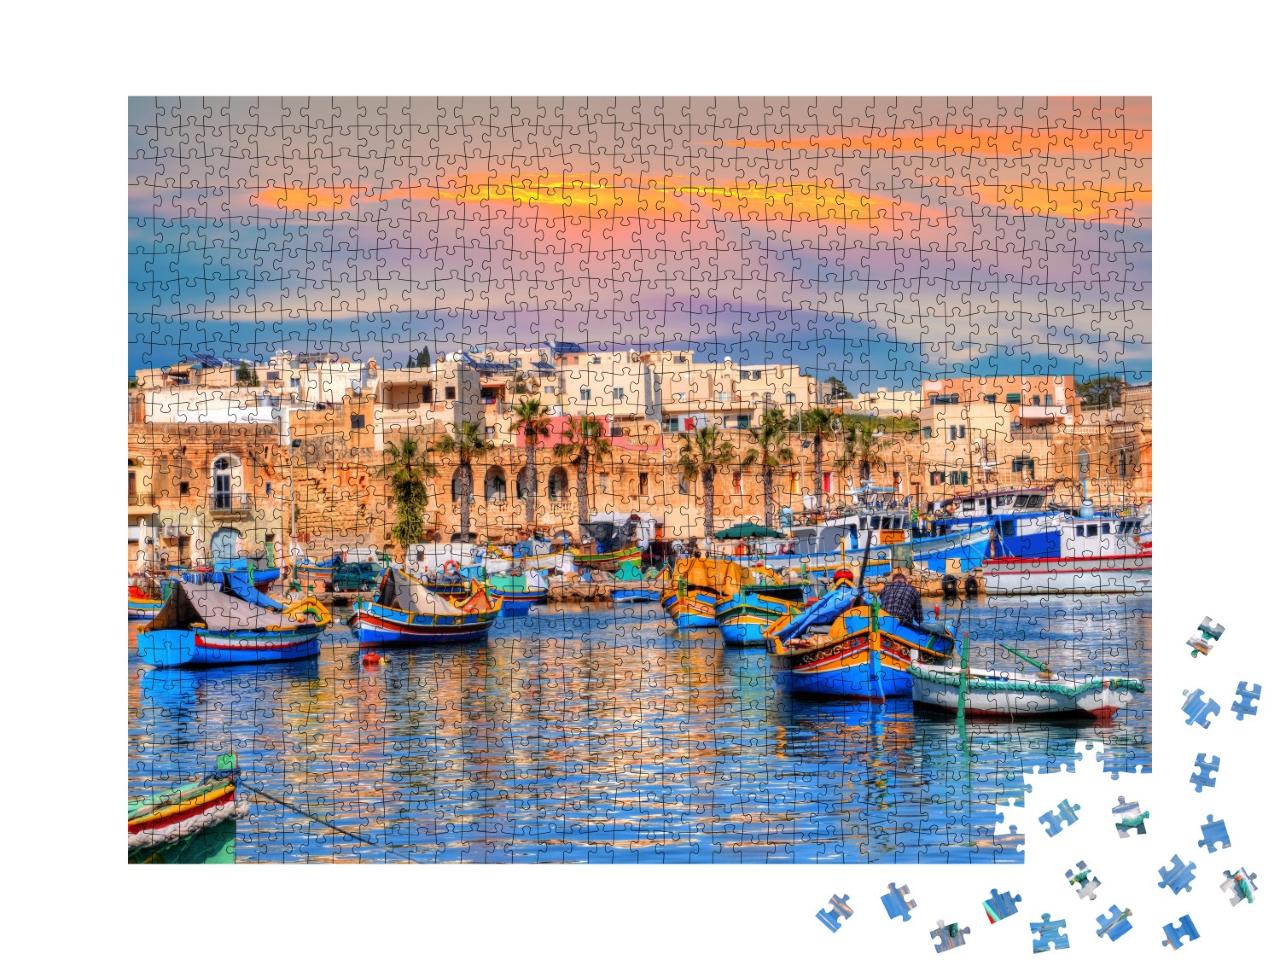 Puzzle de 1000 pièces « Maisons traditionnelles et bateaux dans le port de la ville de Marsaxlokk à Malte »